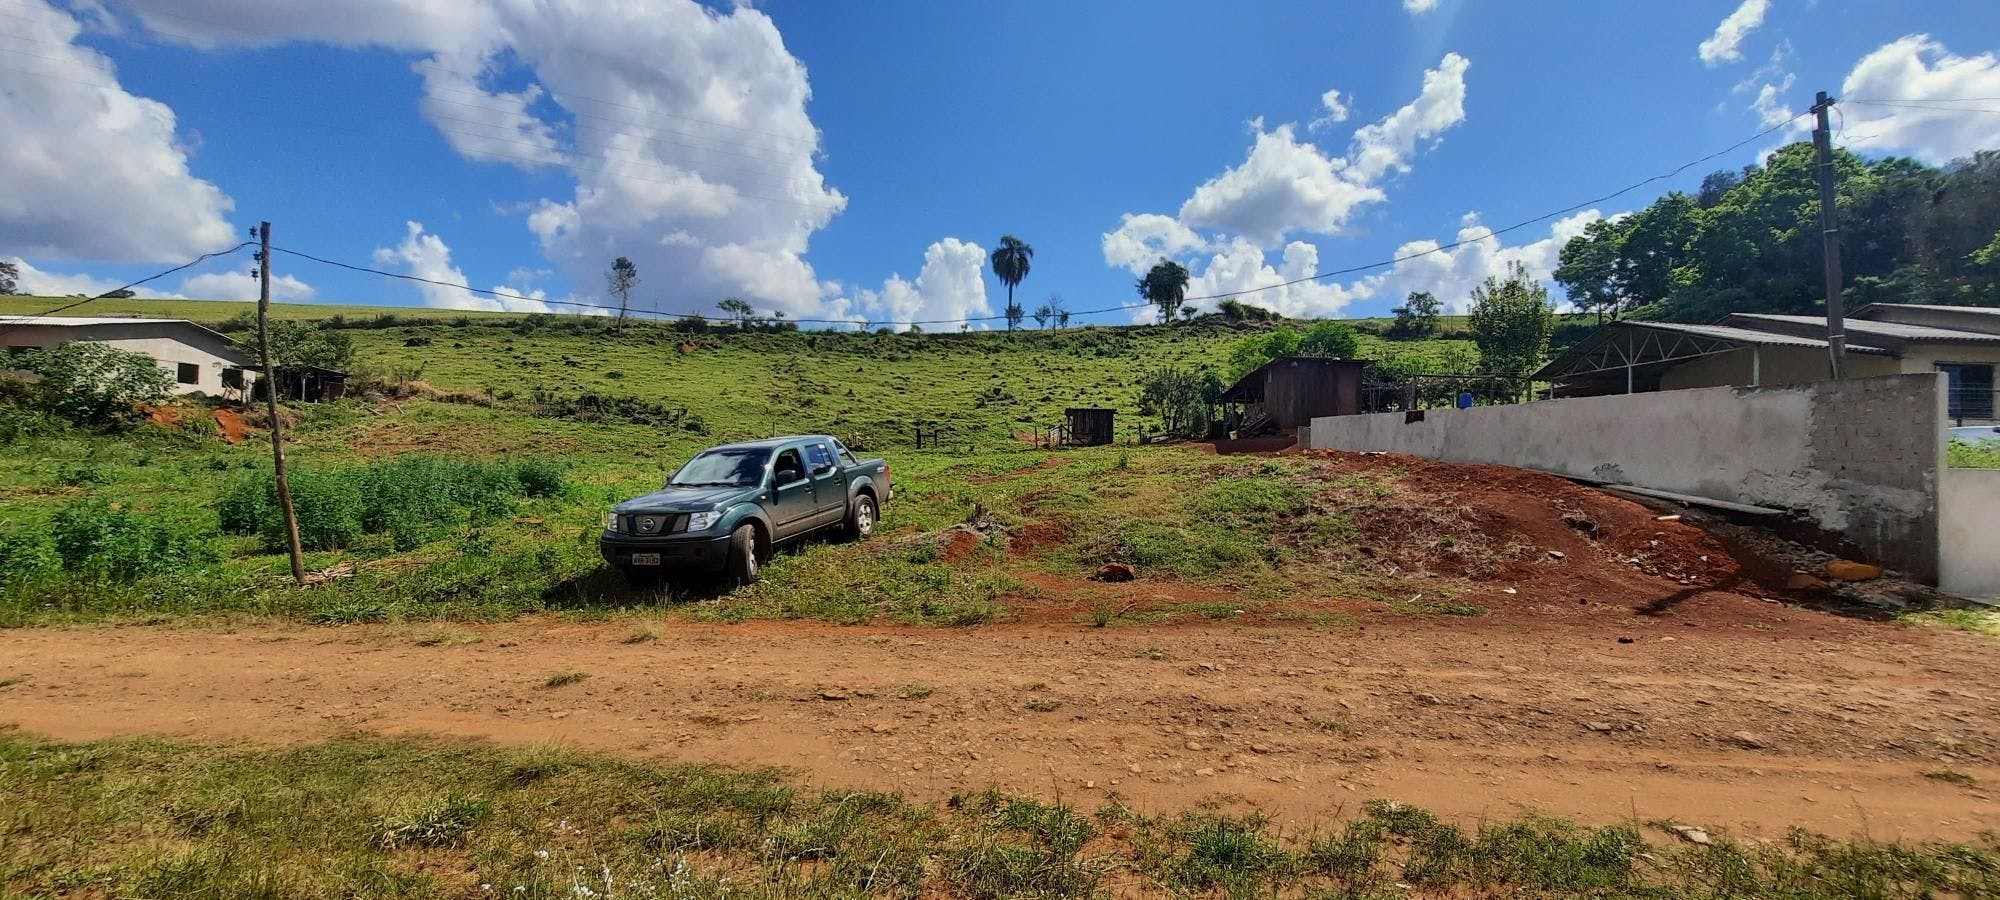 Terreno Rural à venda na Comunidade Santa Bárbara